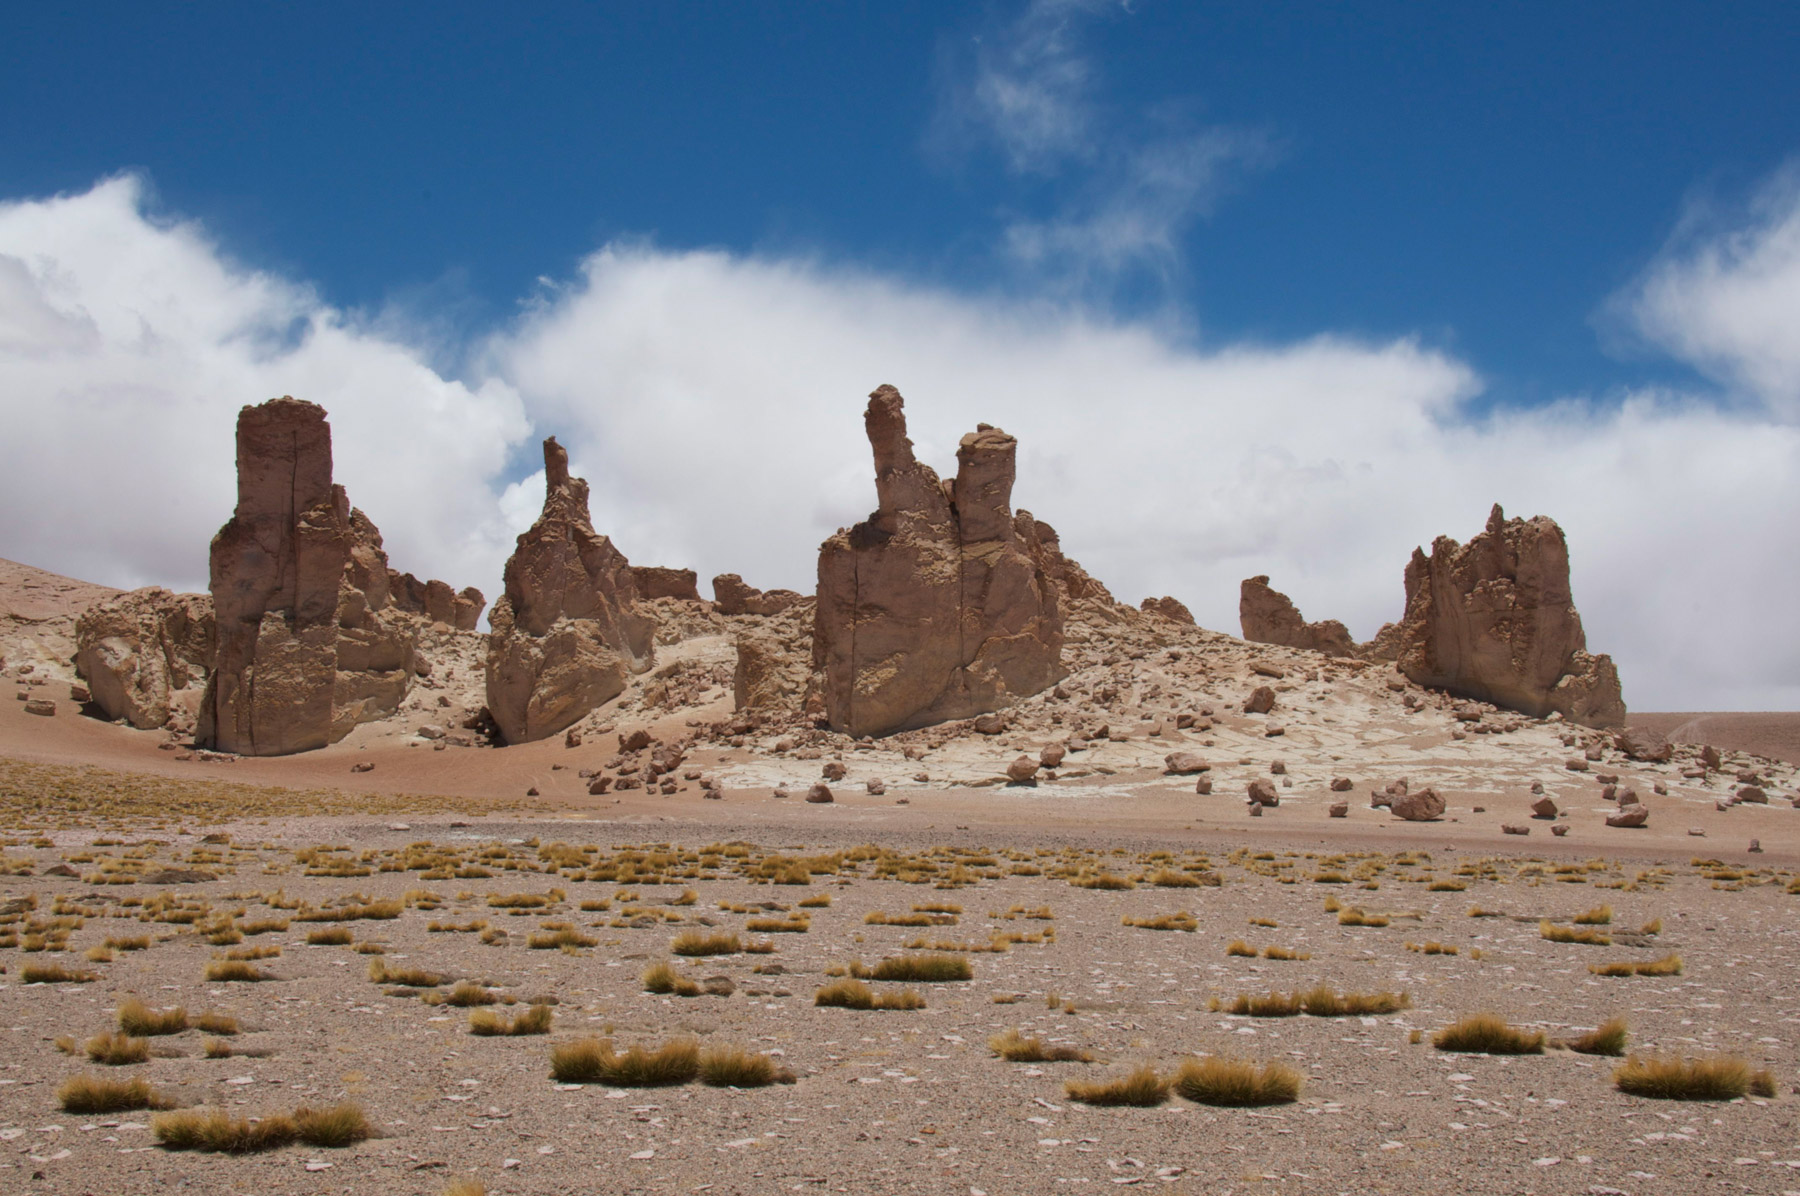 La lave érodée du désert d’Atacama